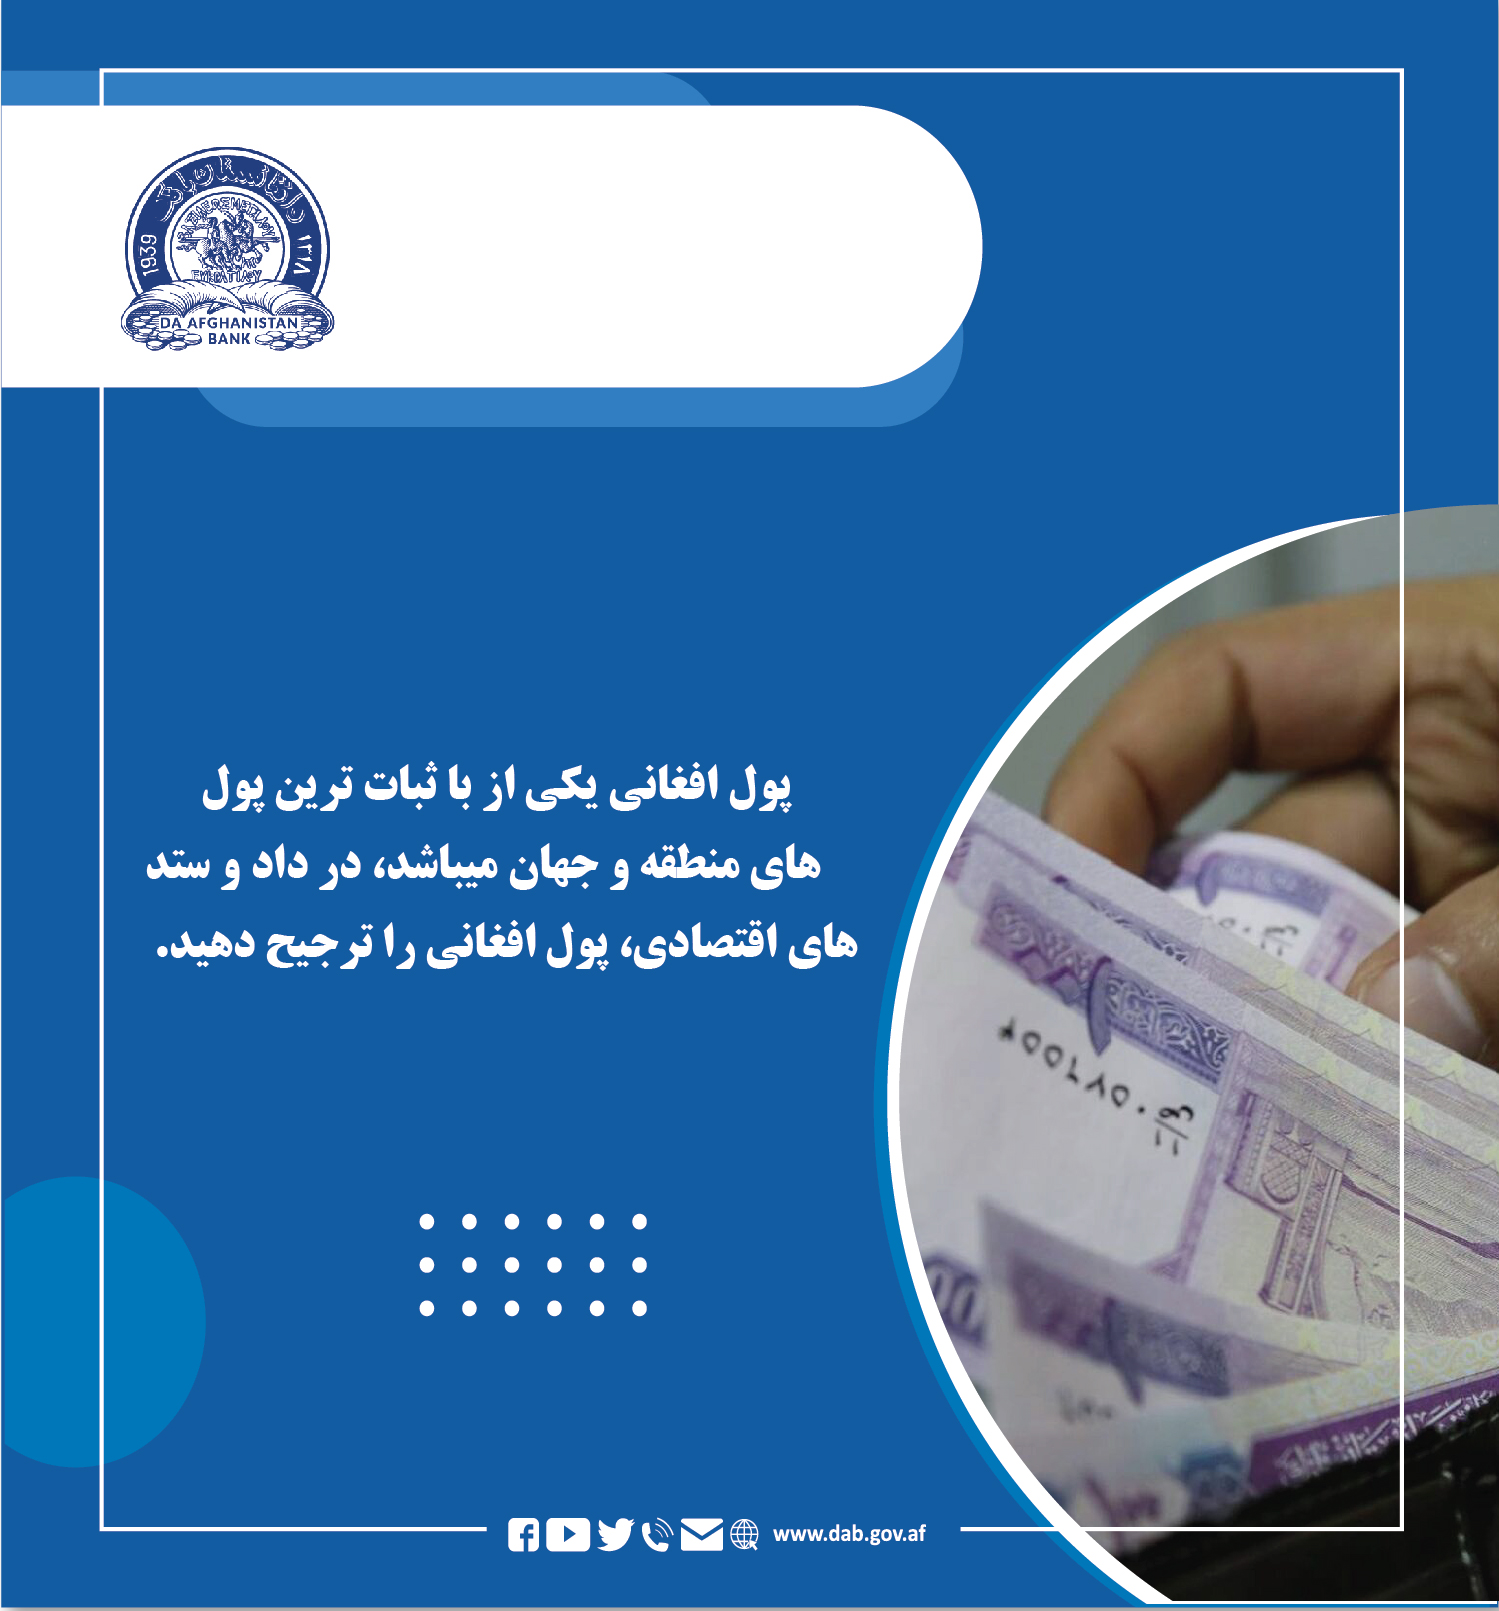 پول افغانی یکی از باثبات ترین پول های منطقه و جهان میباشد